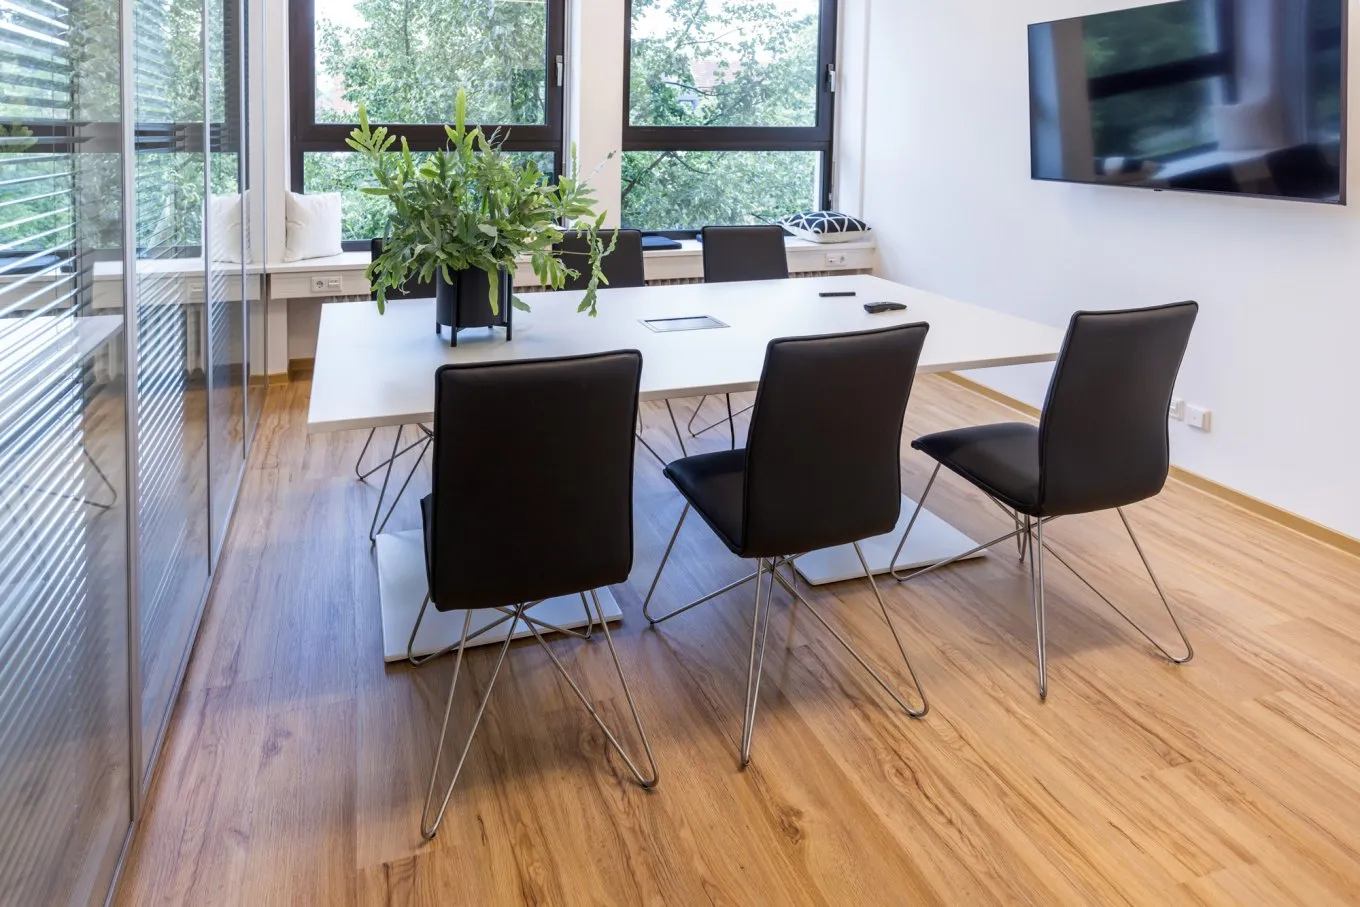 Besprechungsraum mit moderner Einrichtung und Fußboden in Holzoptik